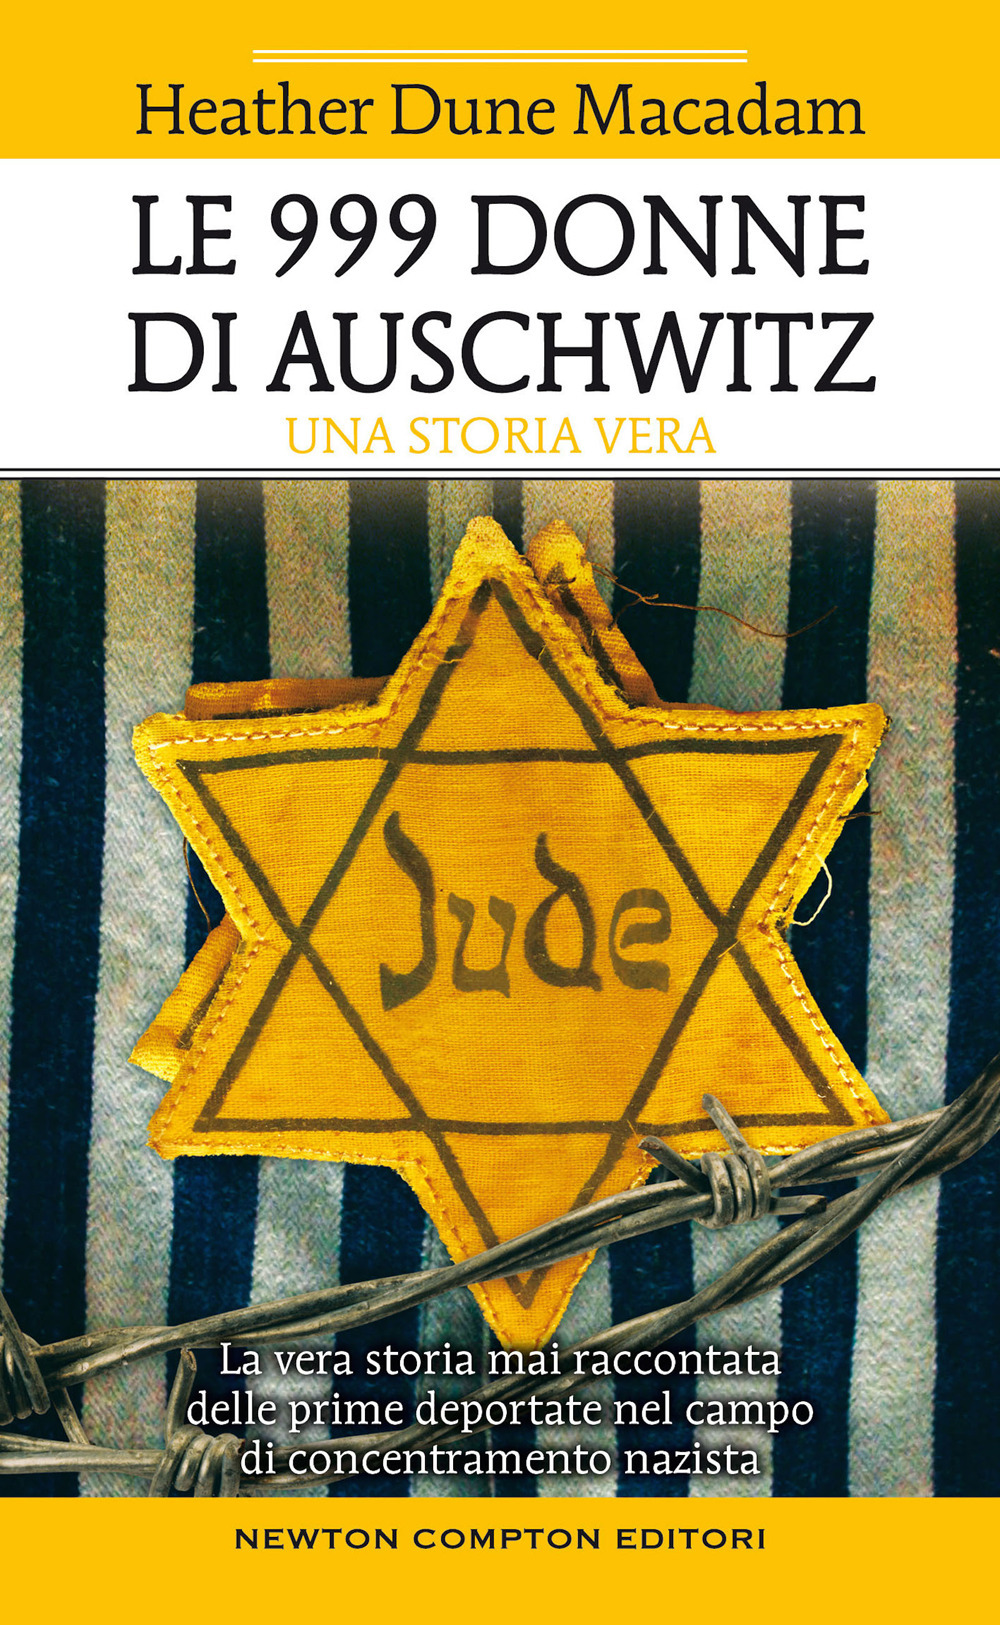 Le 999 donne di Auschwitz. La vera storia mai raccontata delle prime deportate nel campo di concentramento nazista